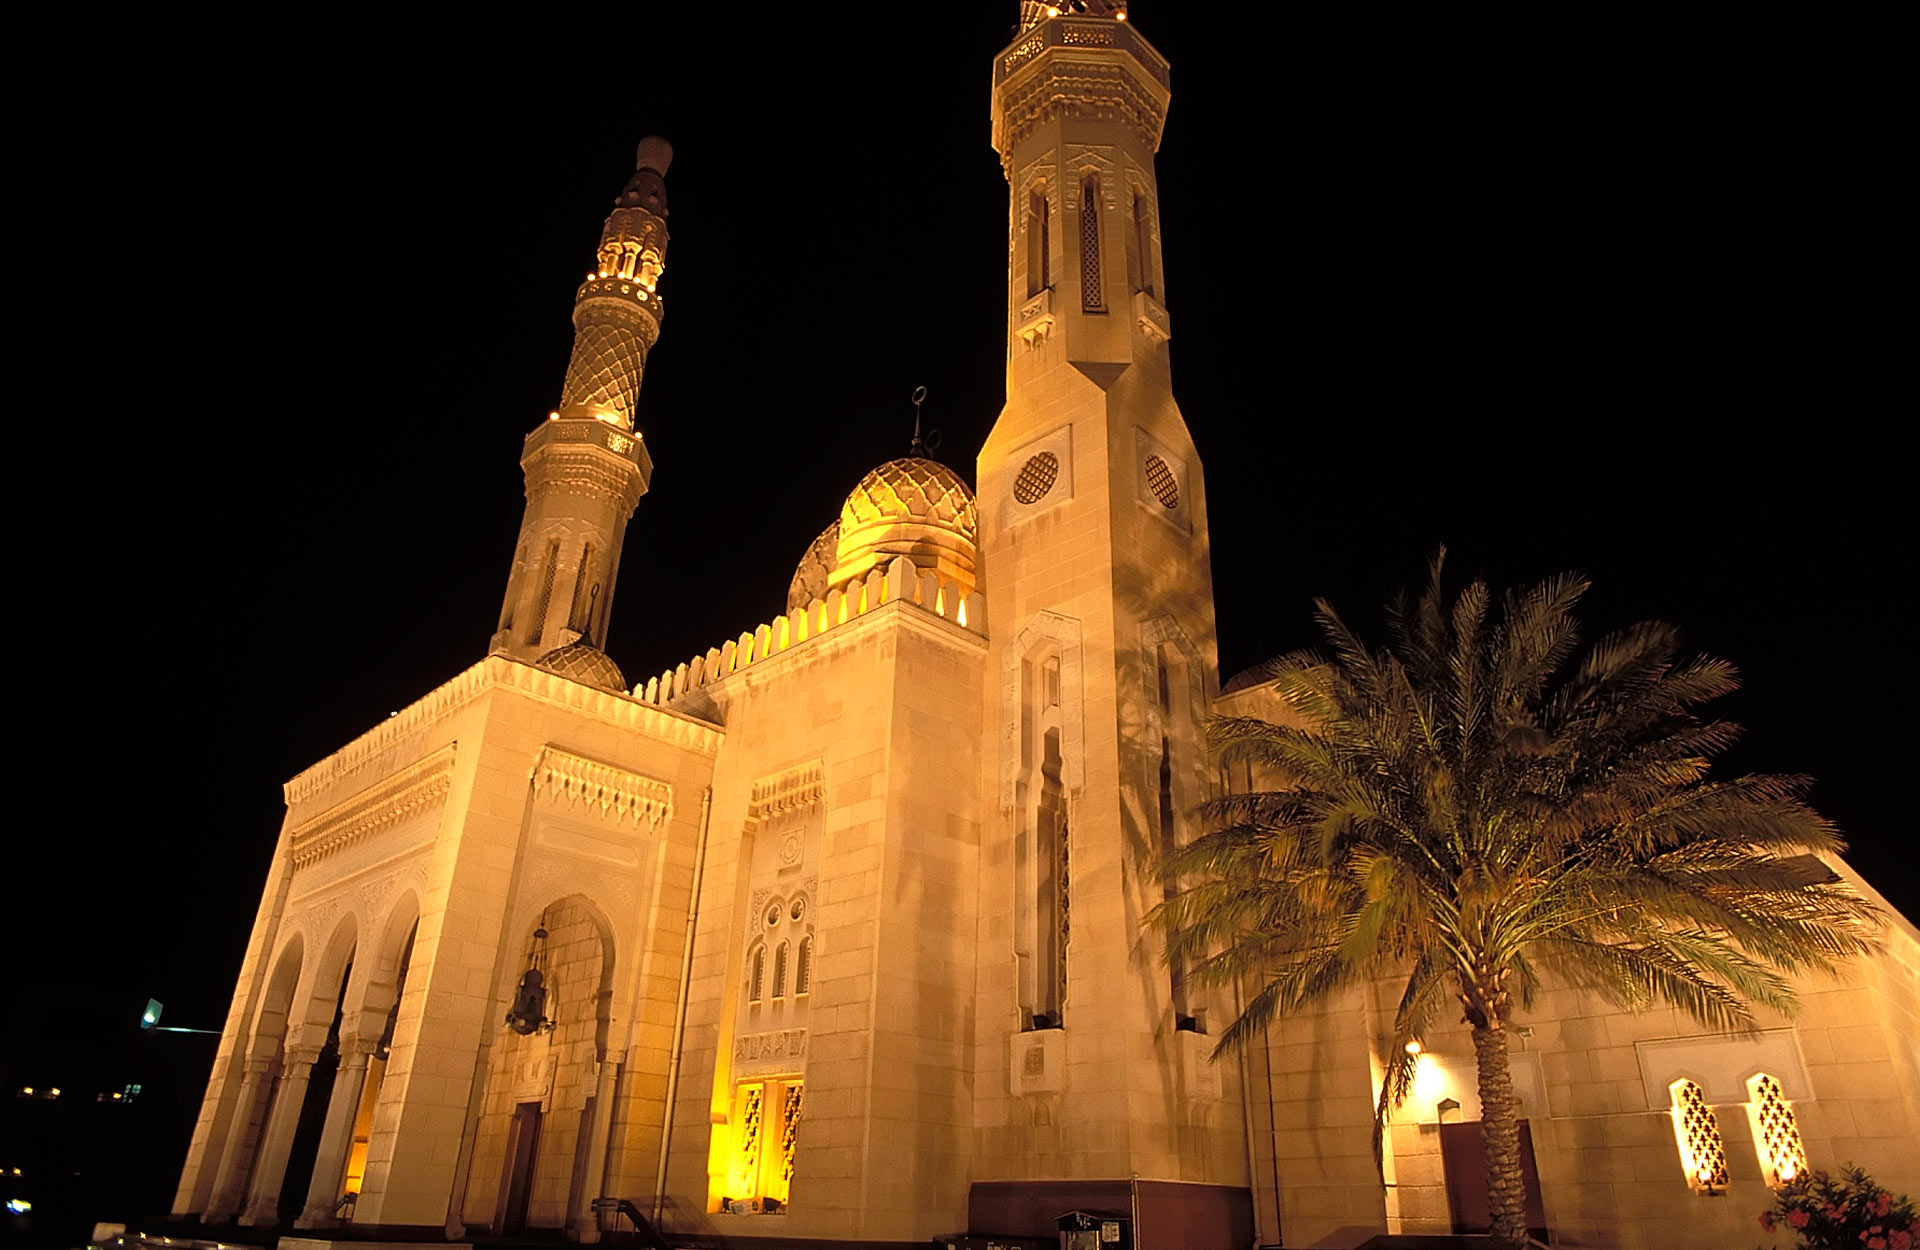 Al Jumeirah Mosque at night, Dubai, United Arab Emirates